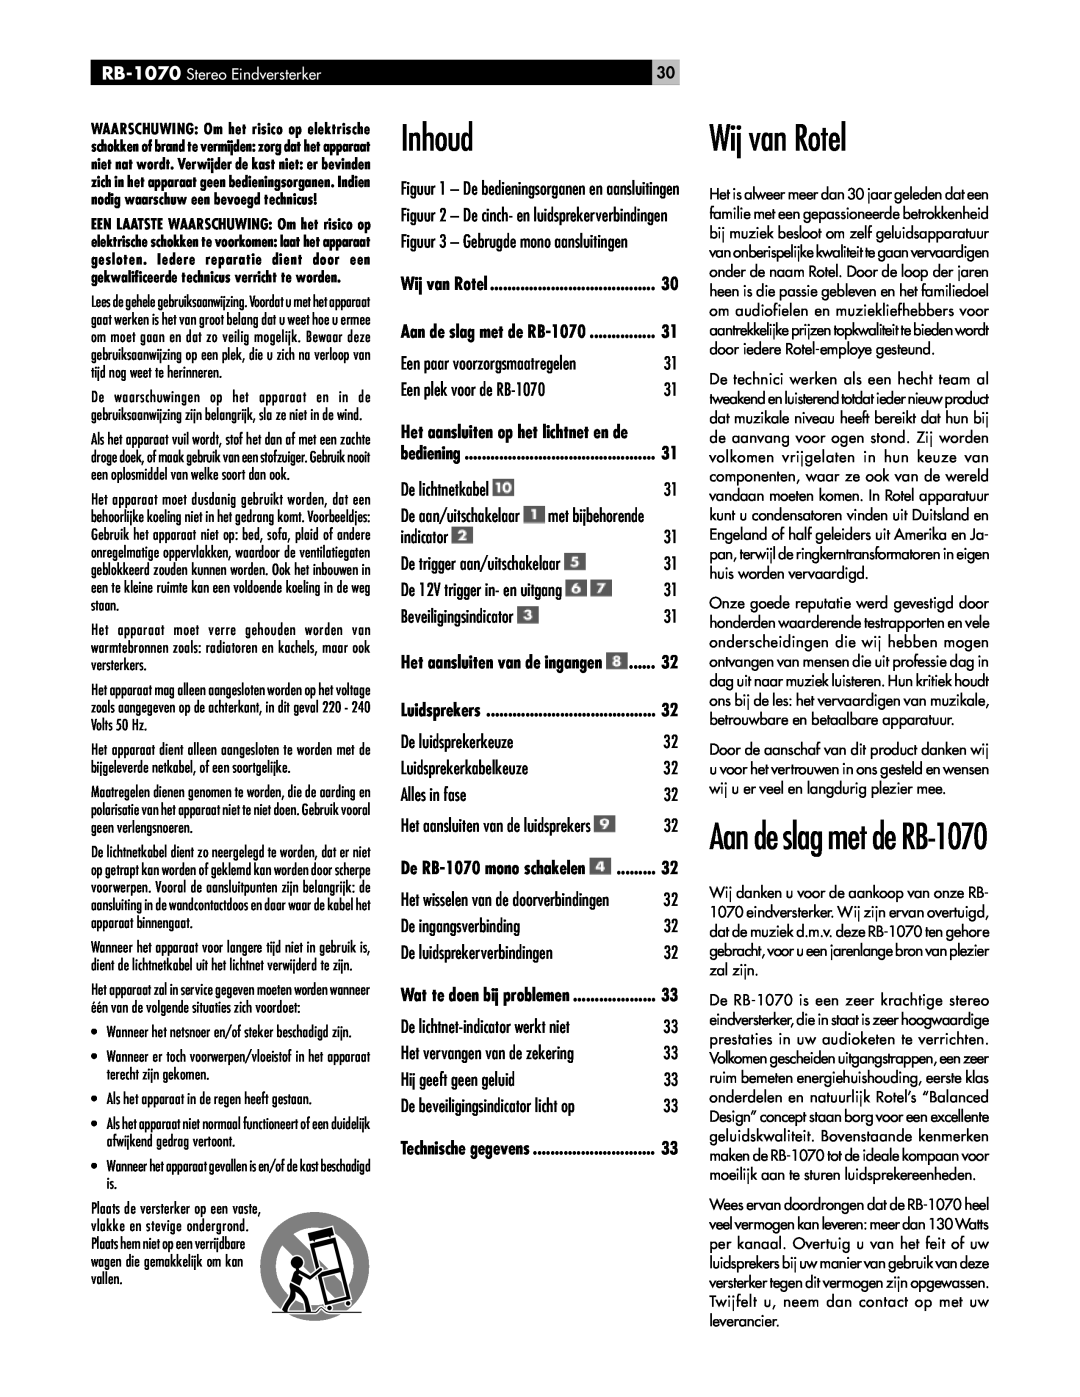 Rotel owner manual Inhoud, Wij van Rotel, Aan de slag met de RB-1070 